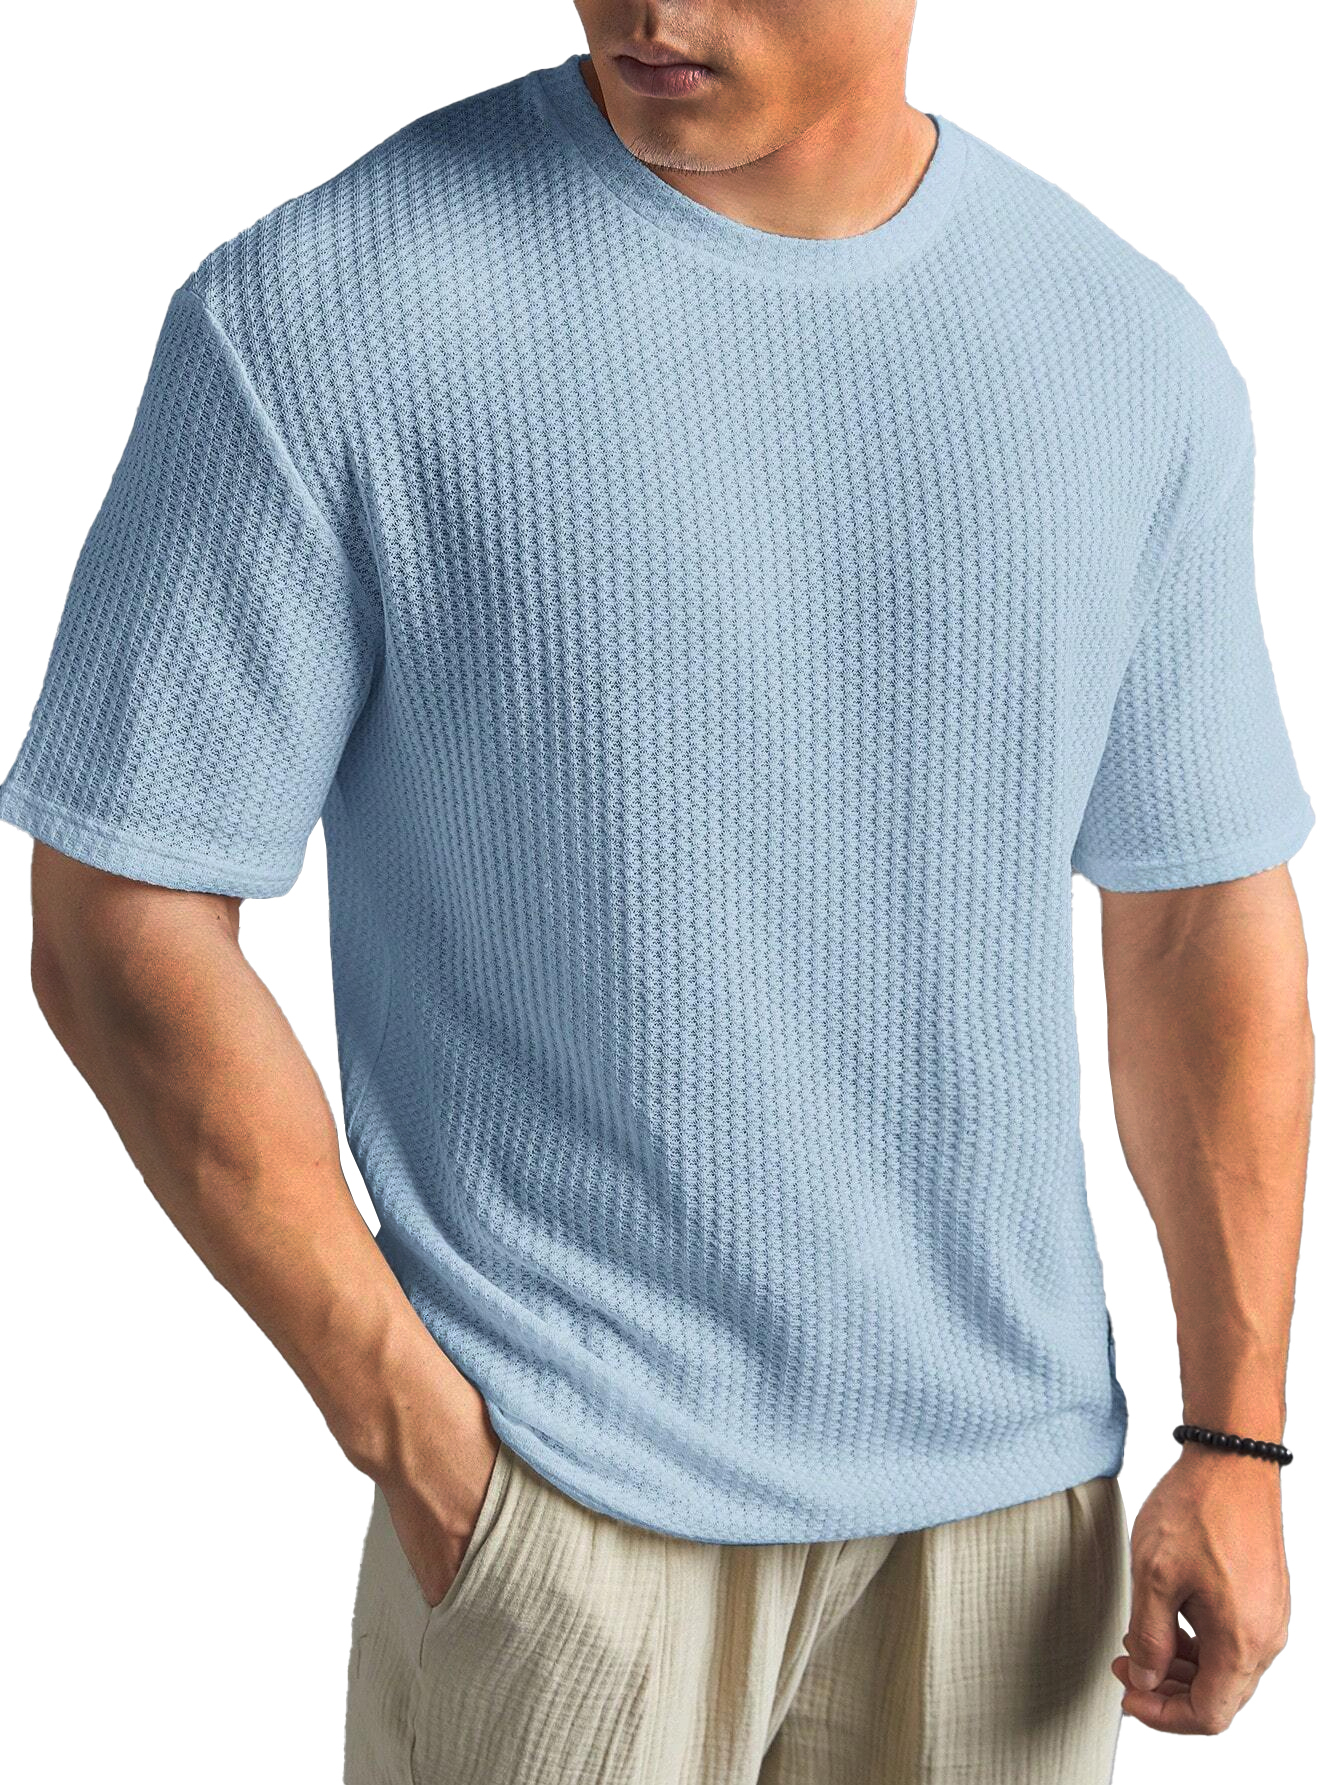 Fashionable Waffle Fabric Round Neck Short-sleeved Bottoming T-shirt